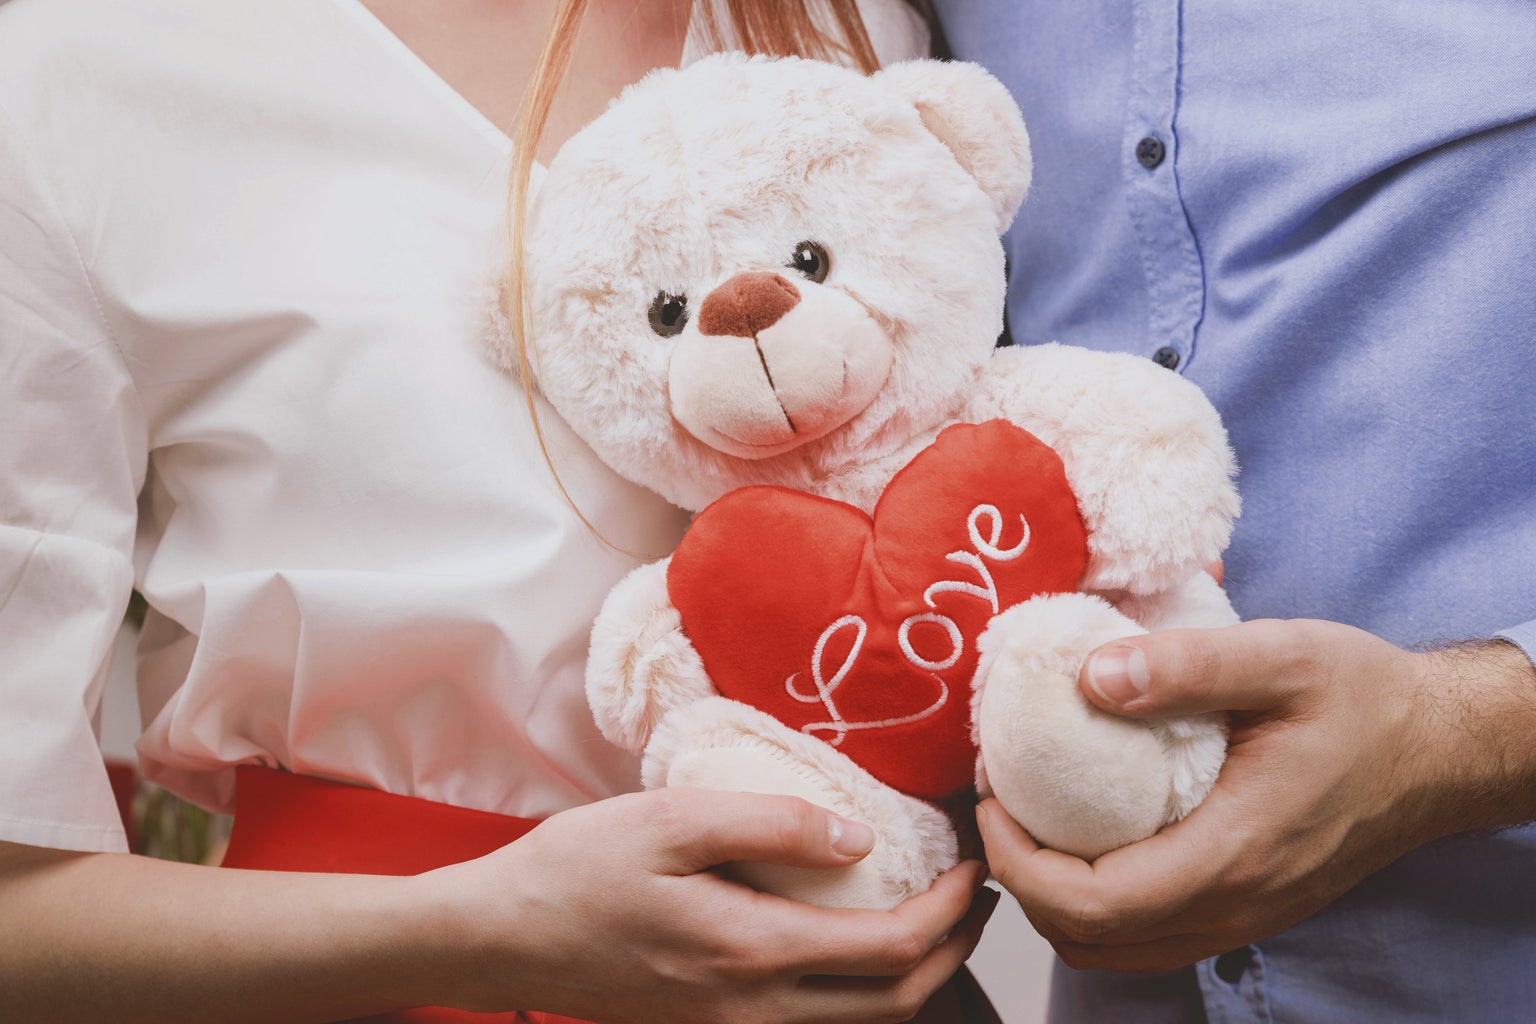 Couple holding a stuffed teddy bear.